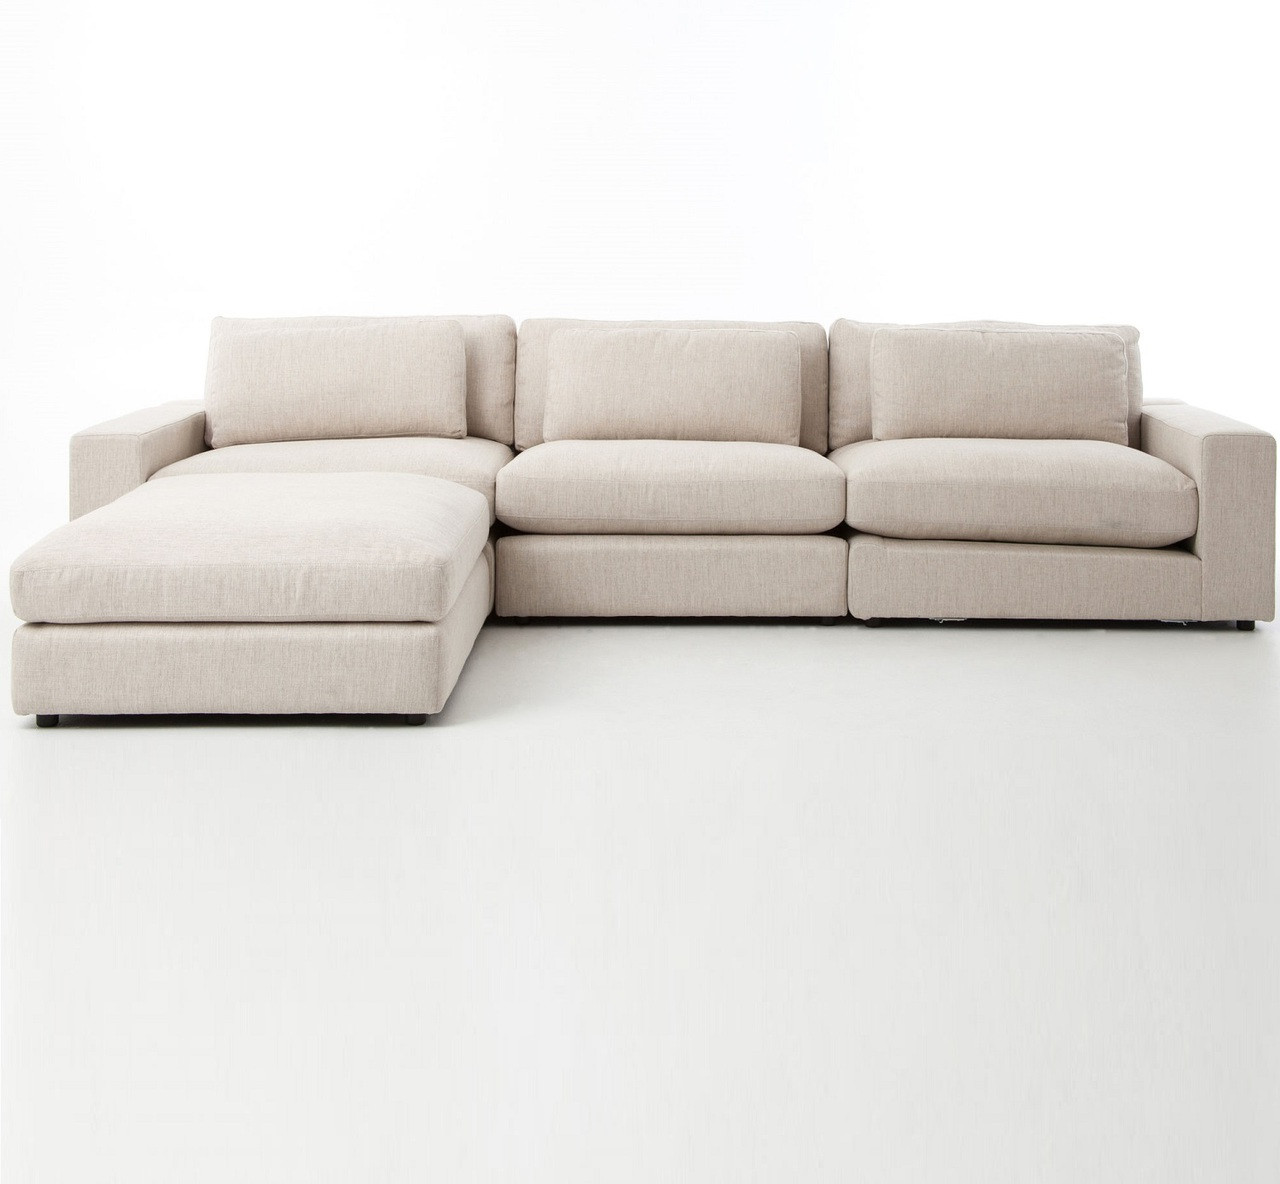 Bloor Beige Contemporary 4 Piece Sectional Sofa Zin Home